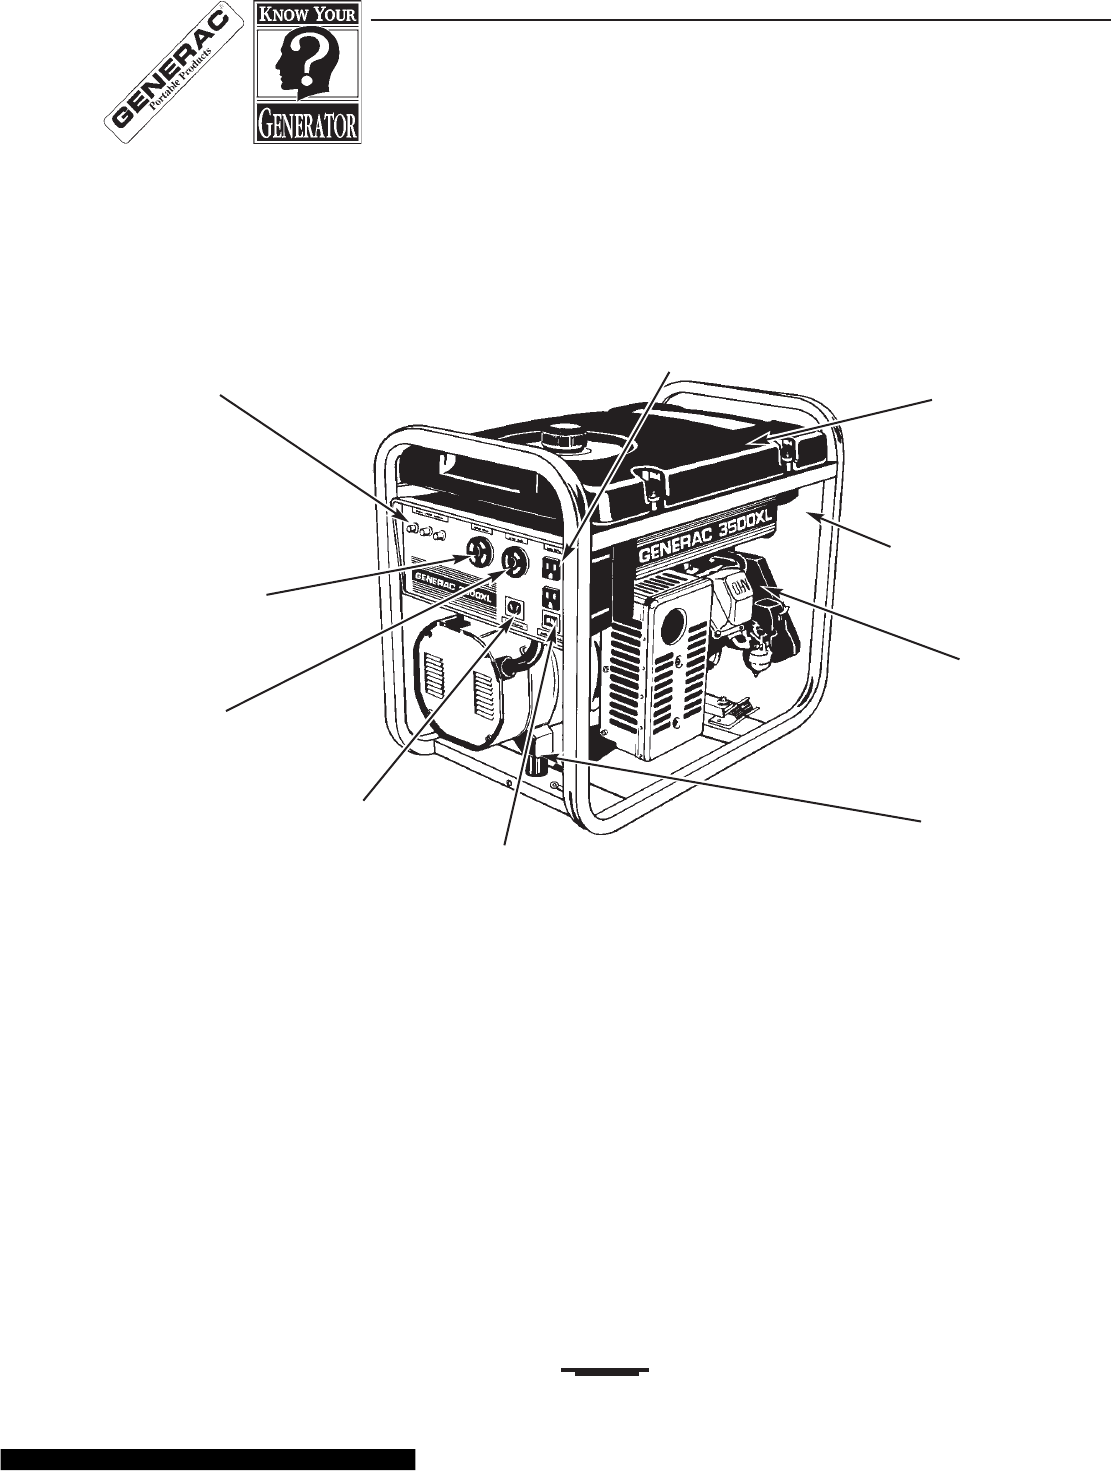 +Generac 3500Xl Caburetor Adjustment - +Generac 3500Xl Caburetor Adjustment - Generac 7043 22kw ...